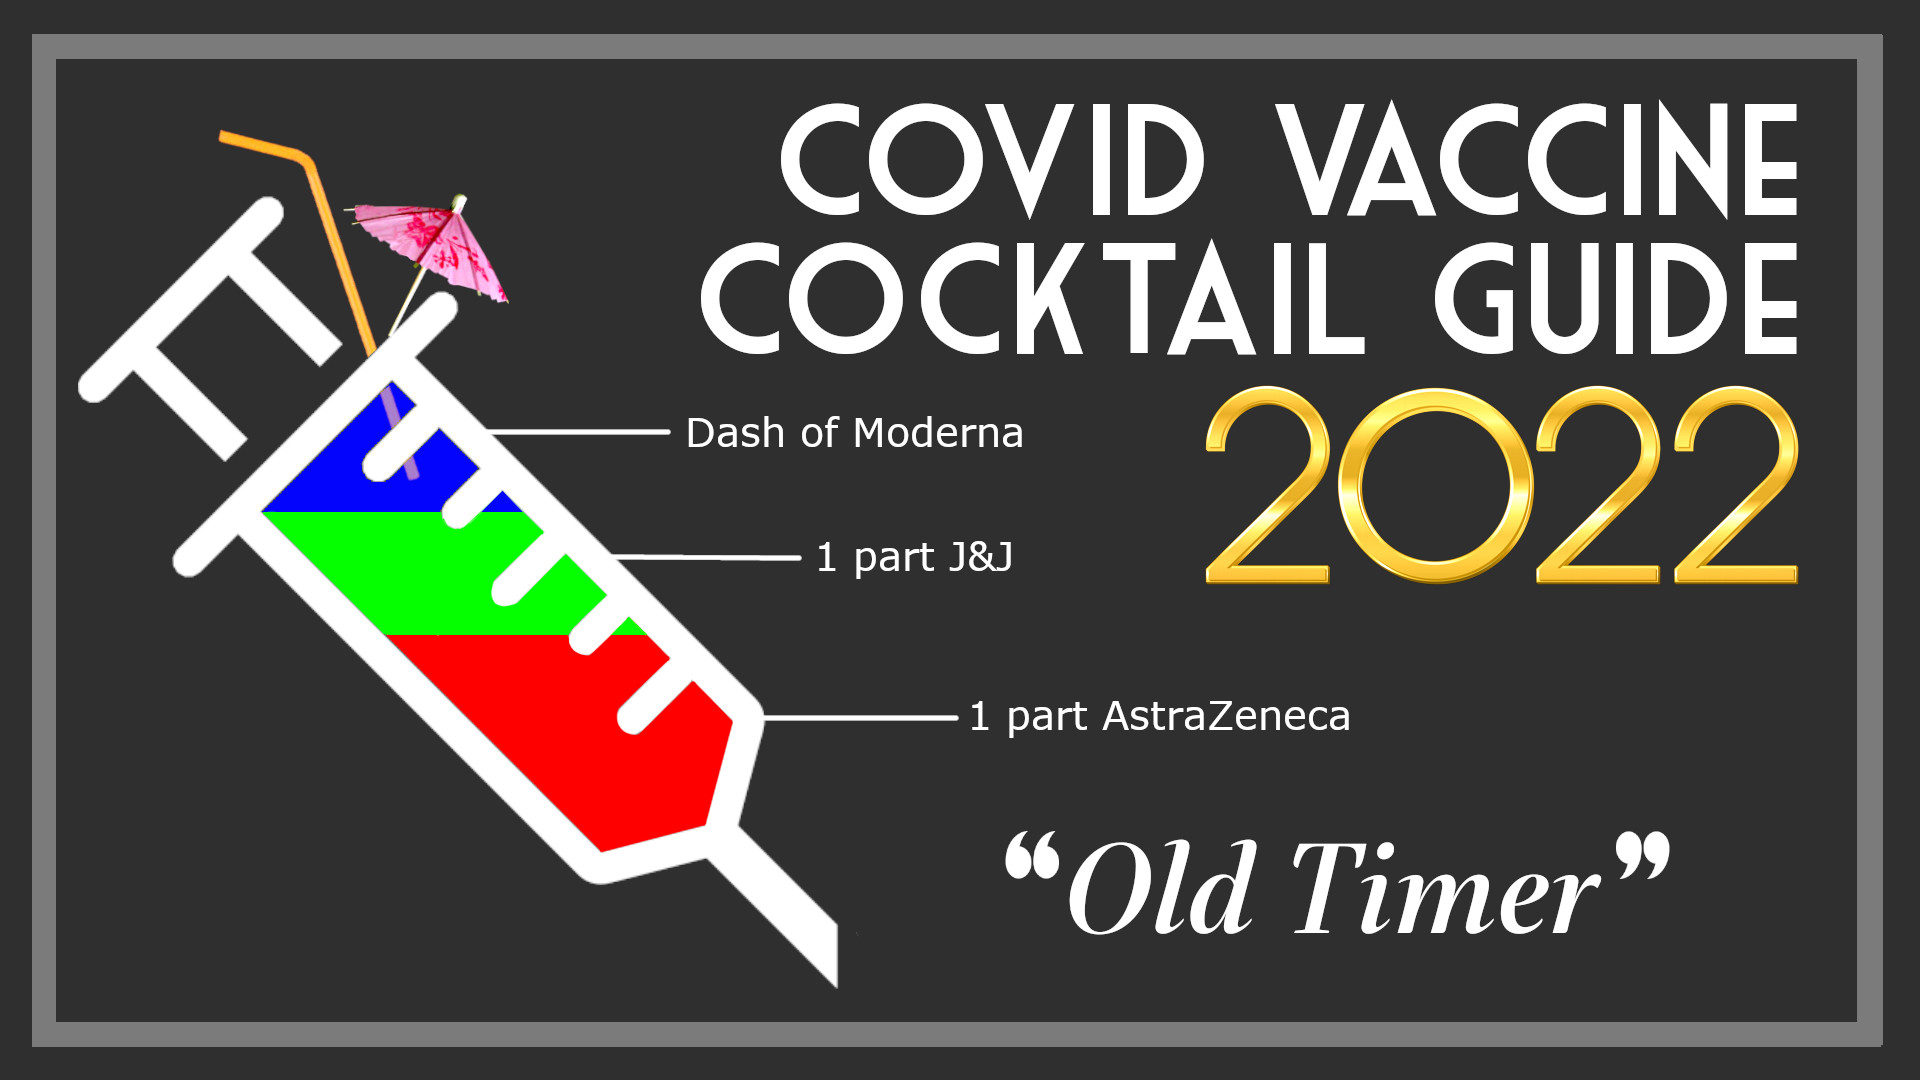 Covid vaccine cocktail recipe guide